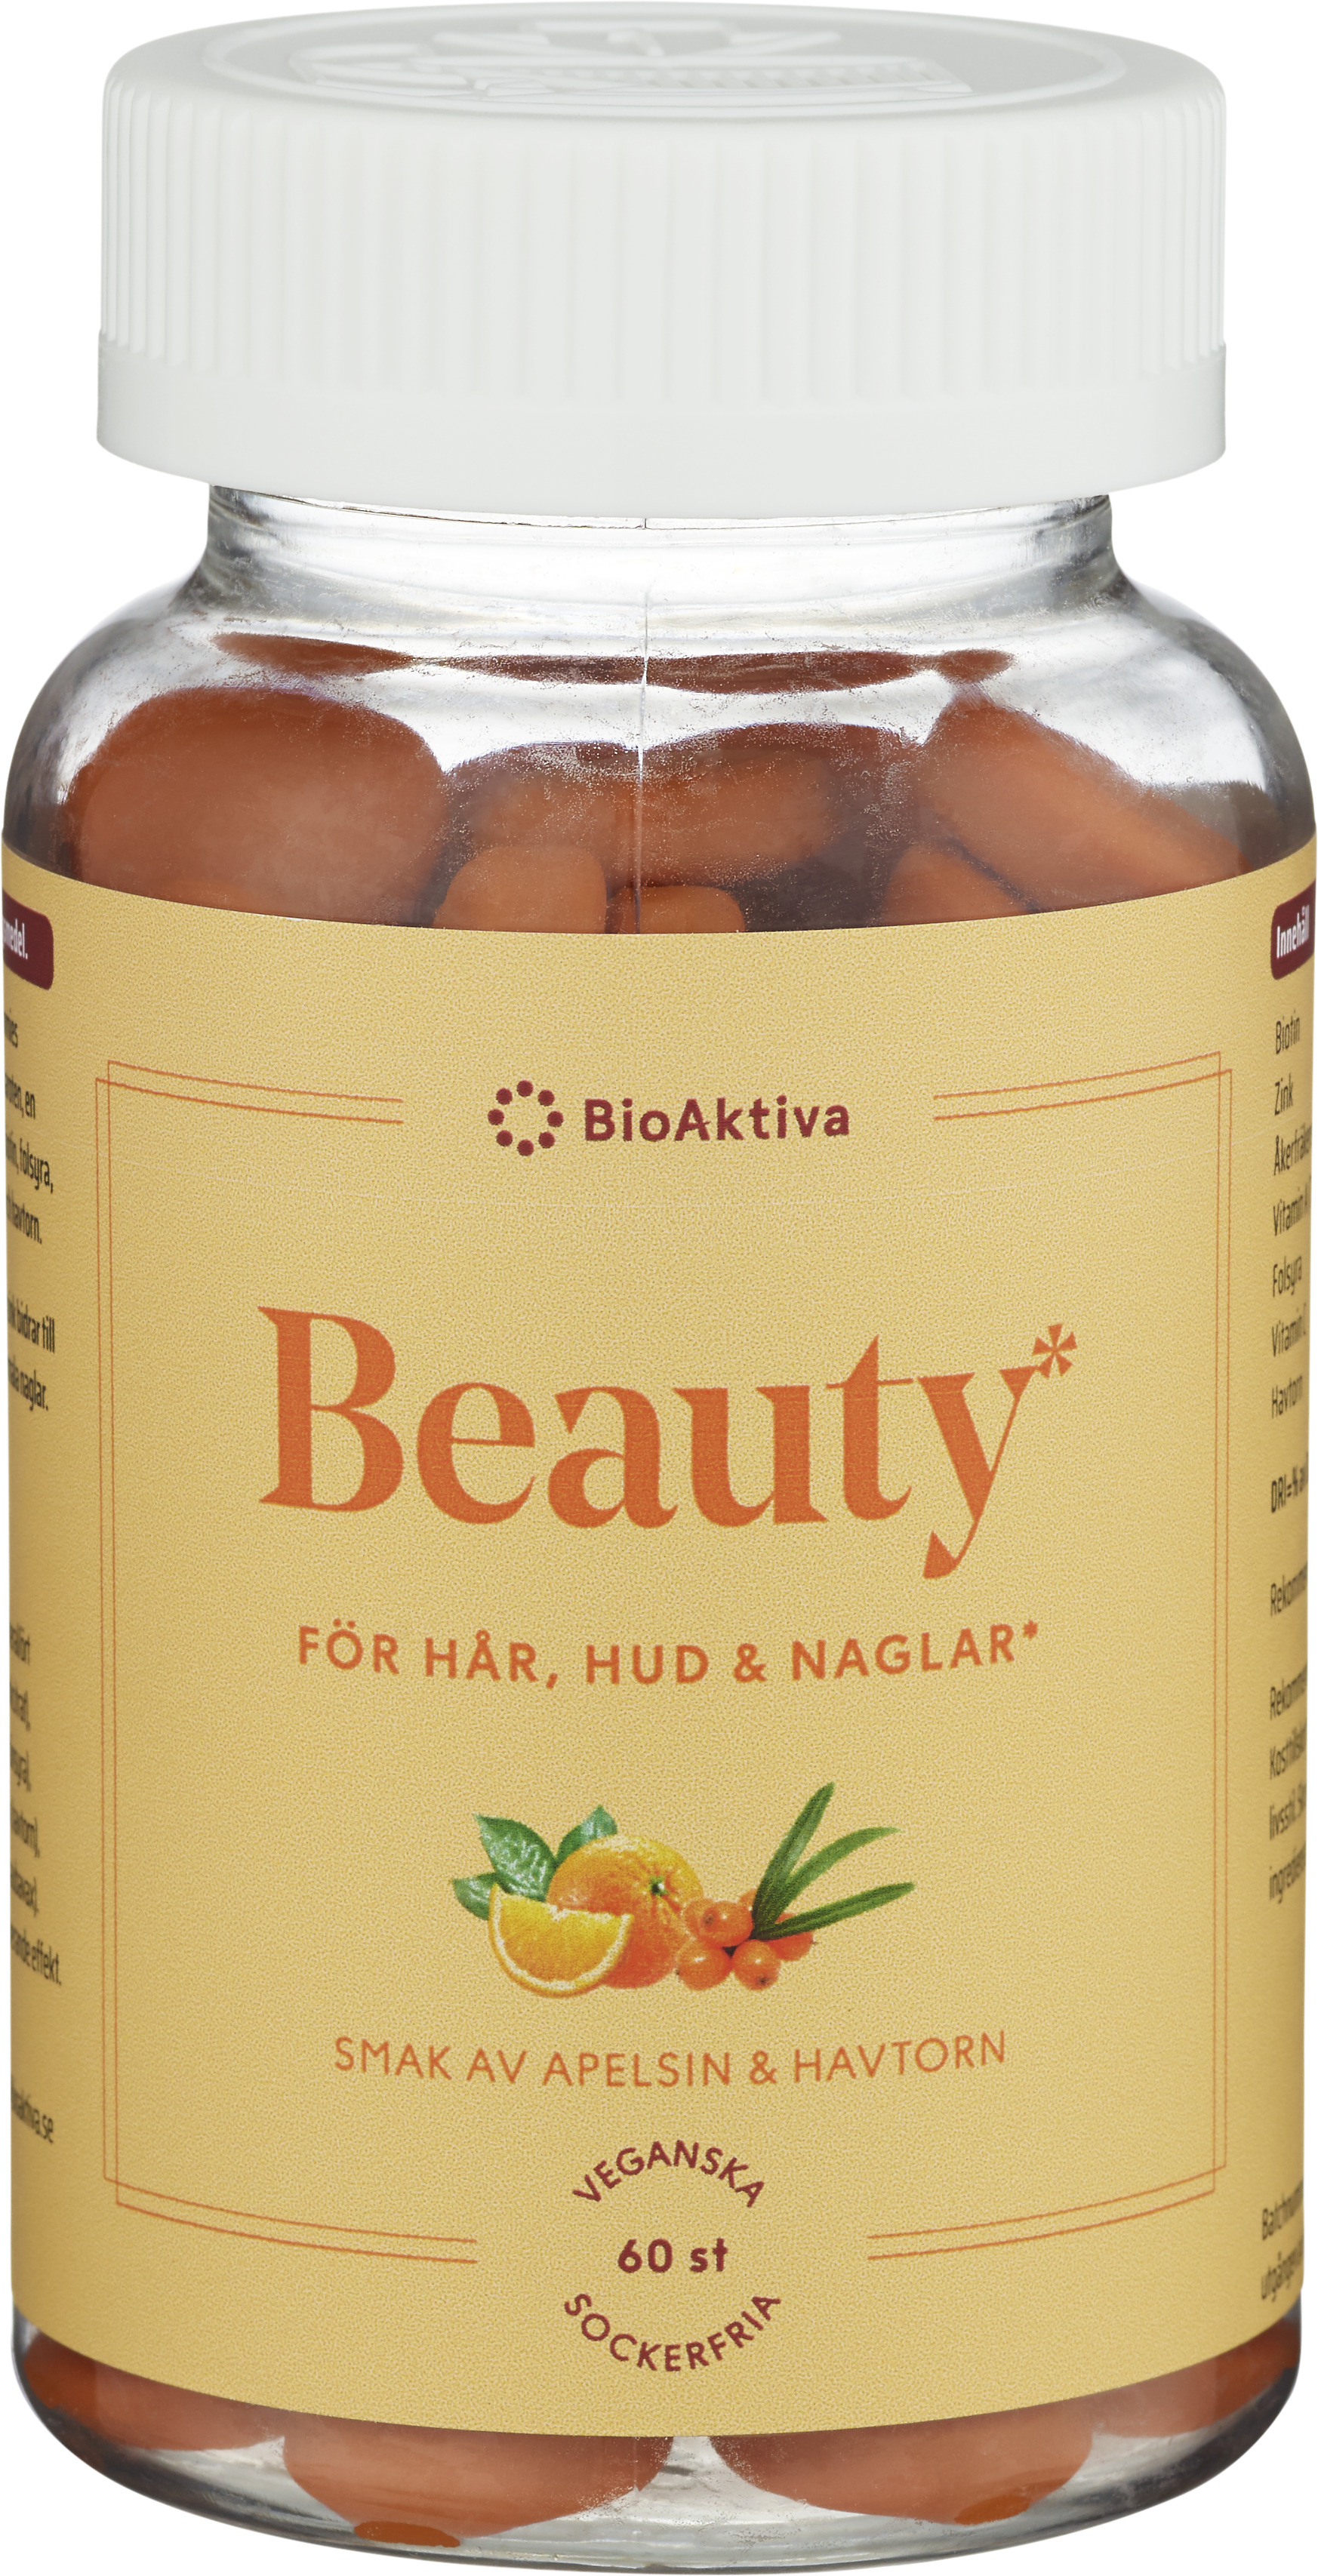 Bioaktiva Beauty 60 st